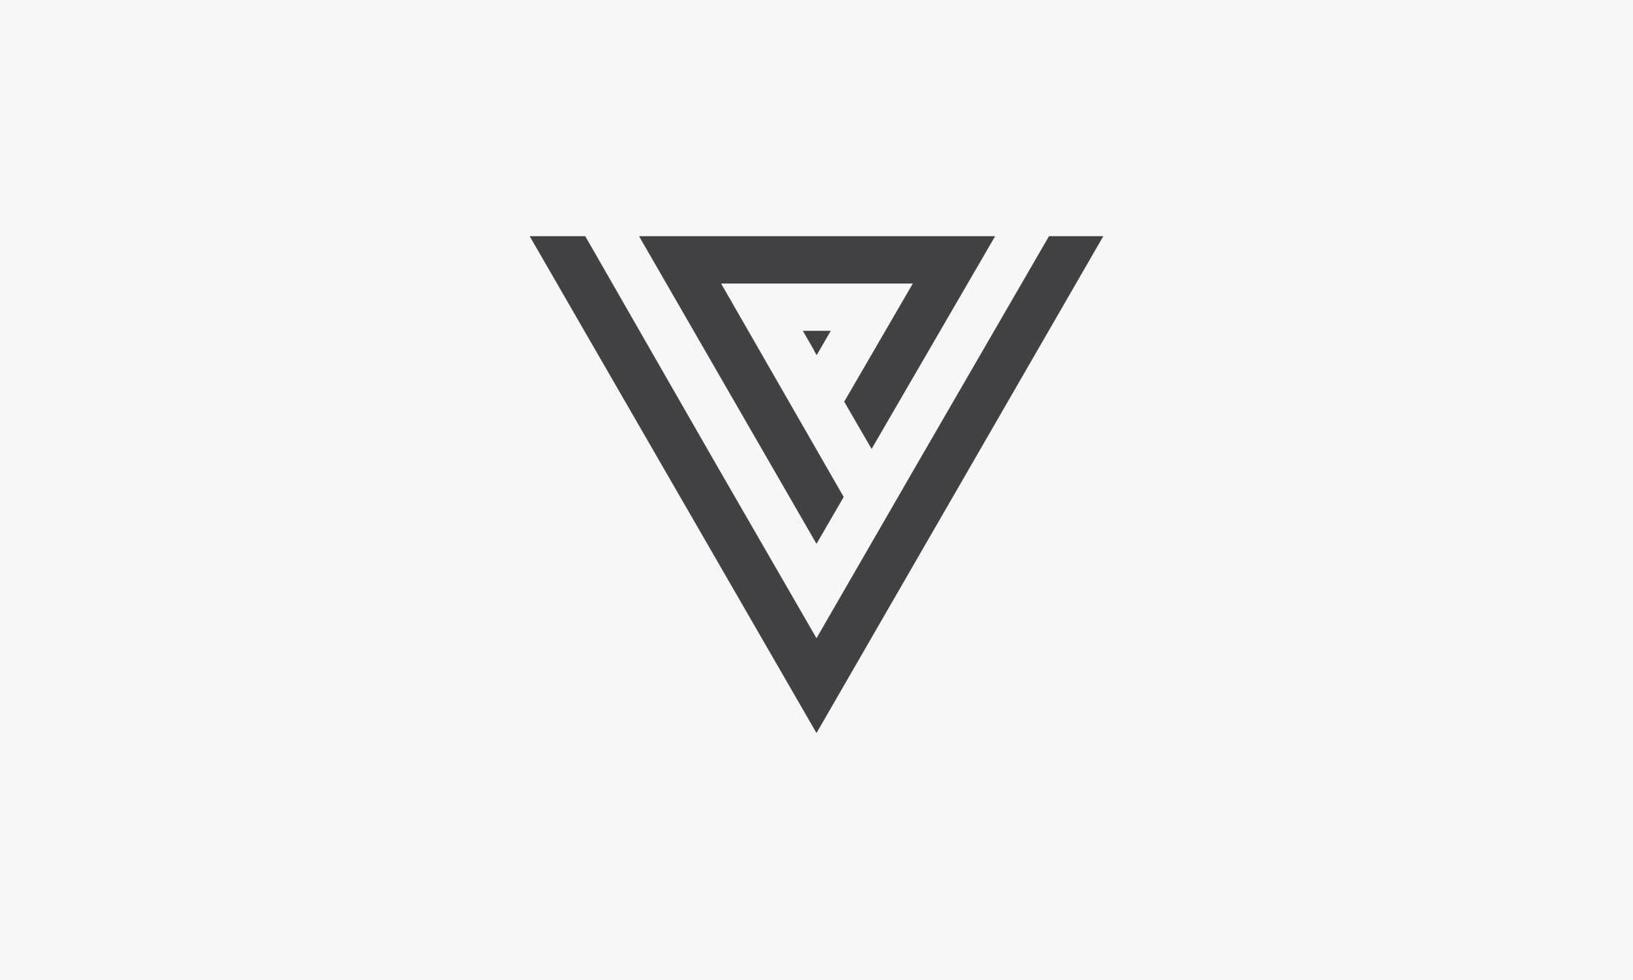 Dreieck-Buchstabe v oder vp oder pv-Logo-Konzept isoliert auf weißem Hintergrund. vektor